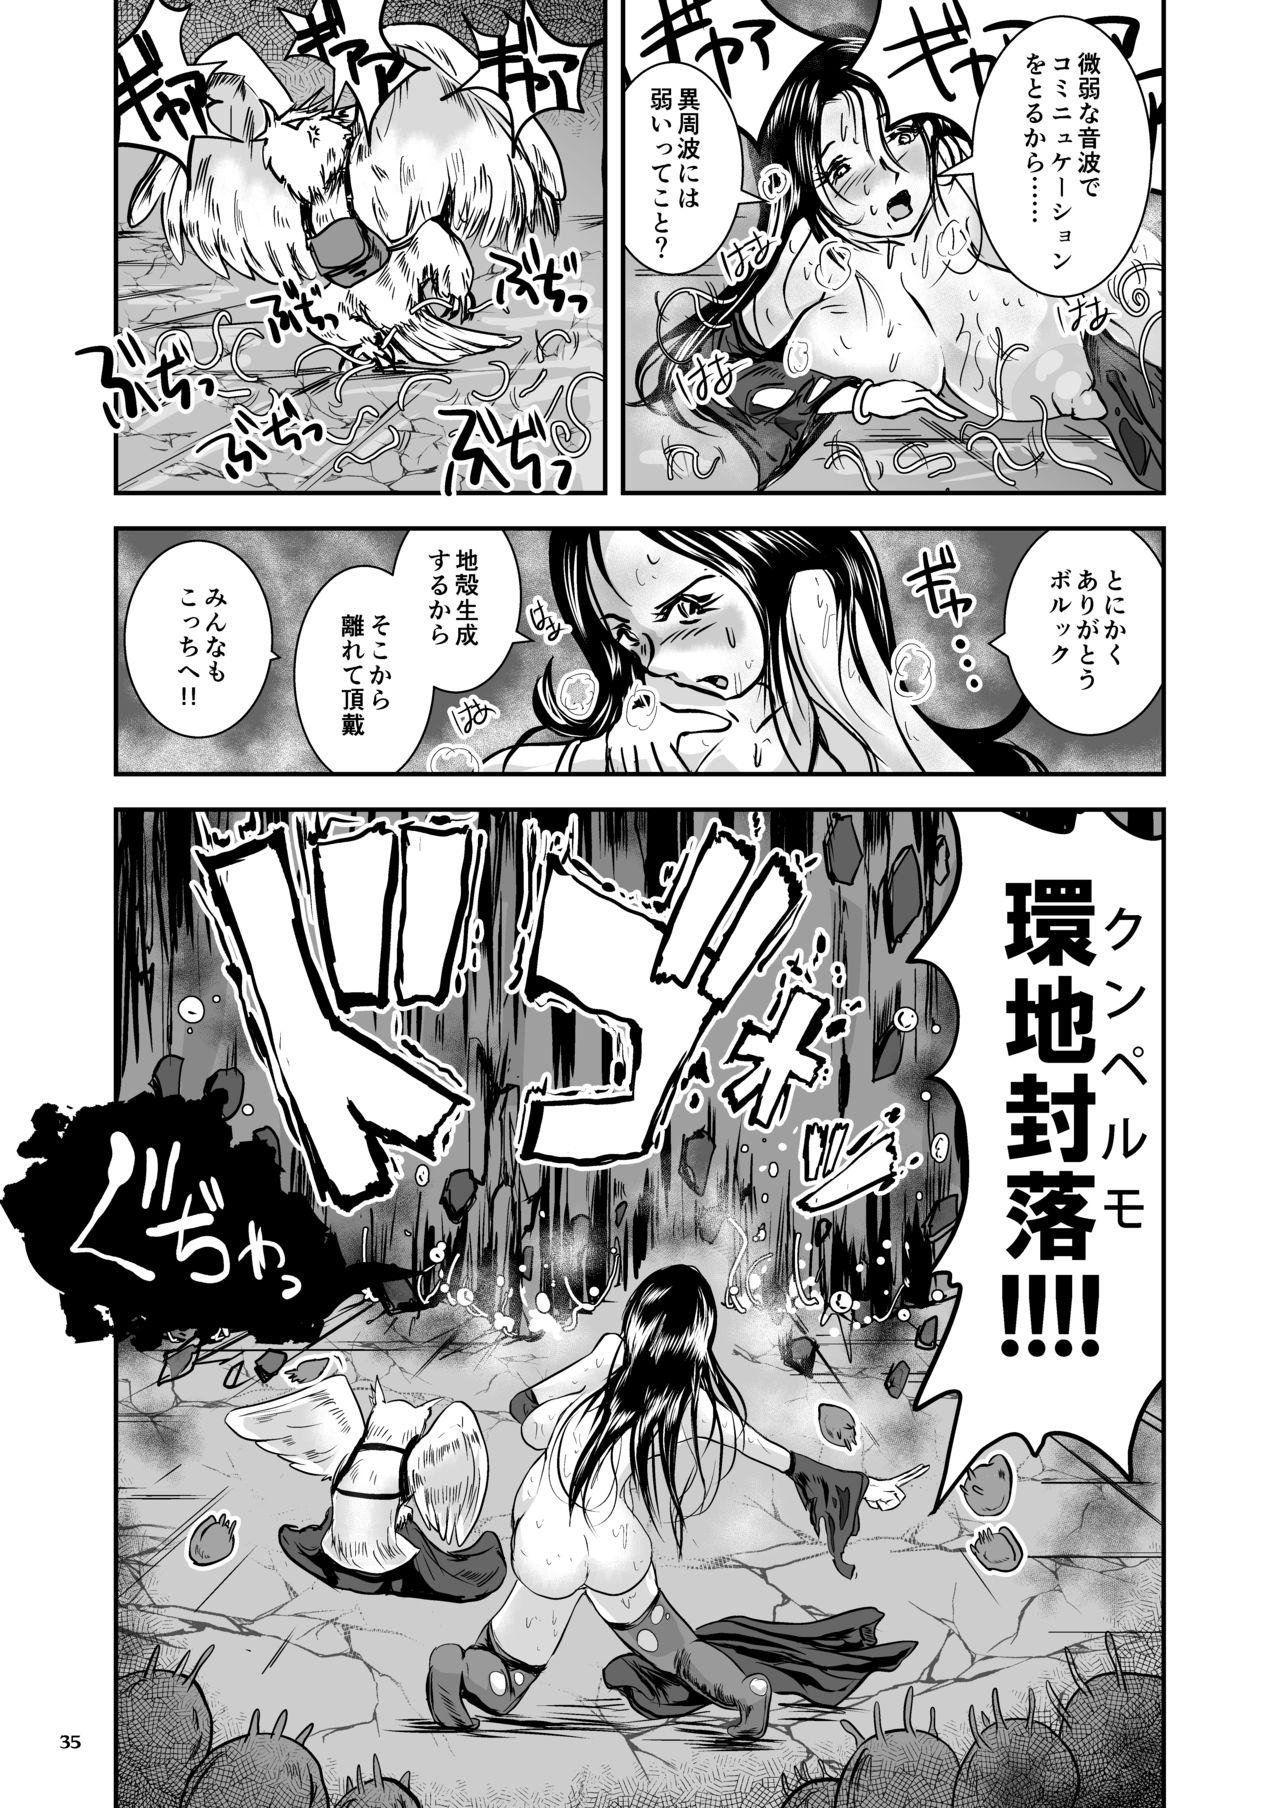 Oonamekuji to Kurokami no Mahoutsukai - Parasitized Giant Slugs V.S. Sorceress of the Black Hair as Aura 34